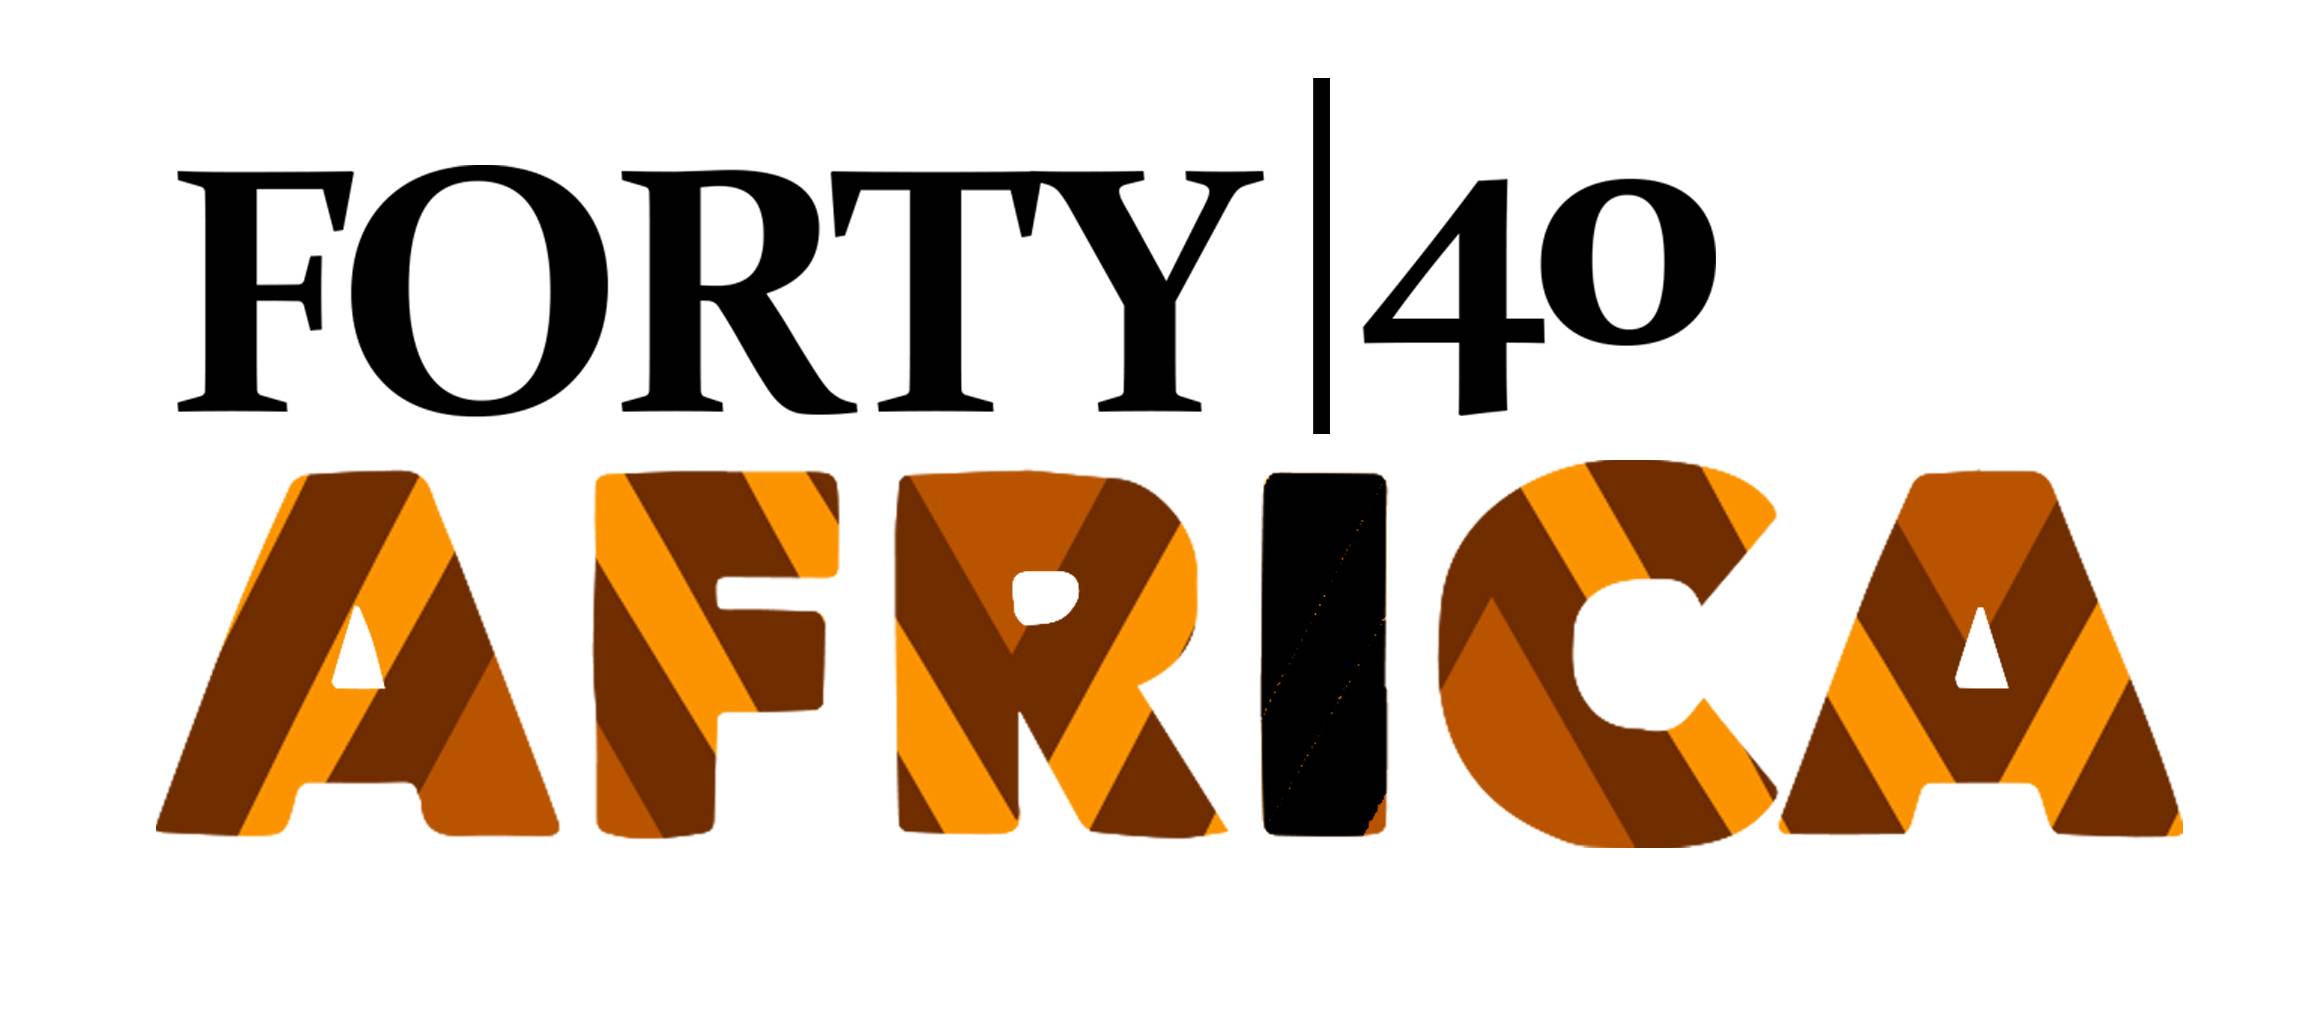 africa travel 100 under 40